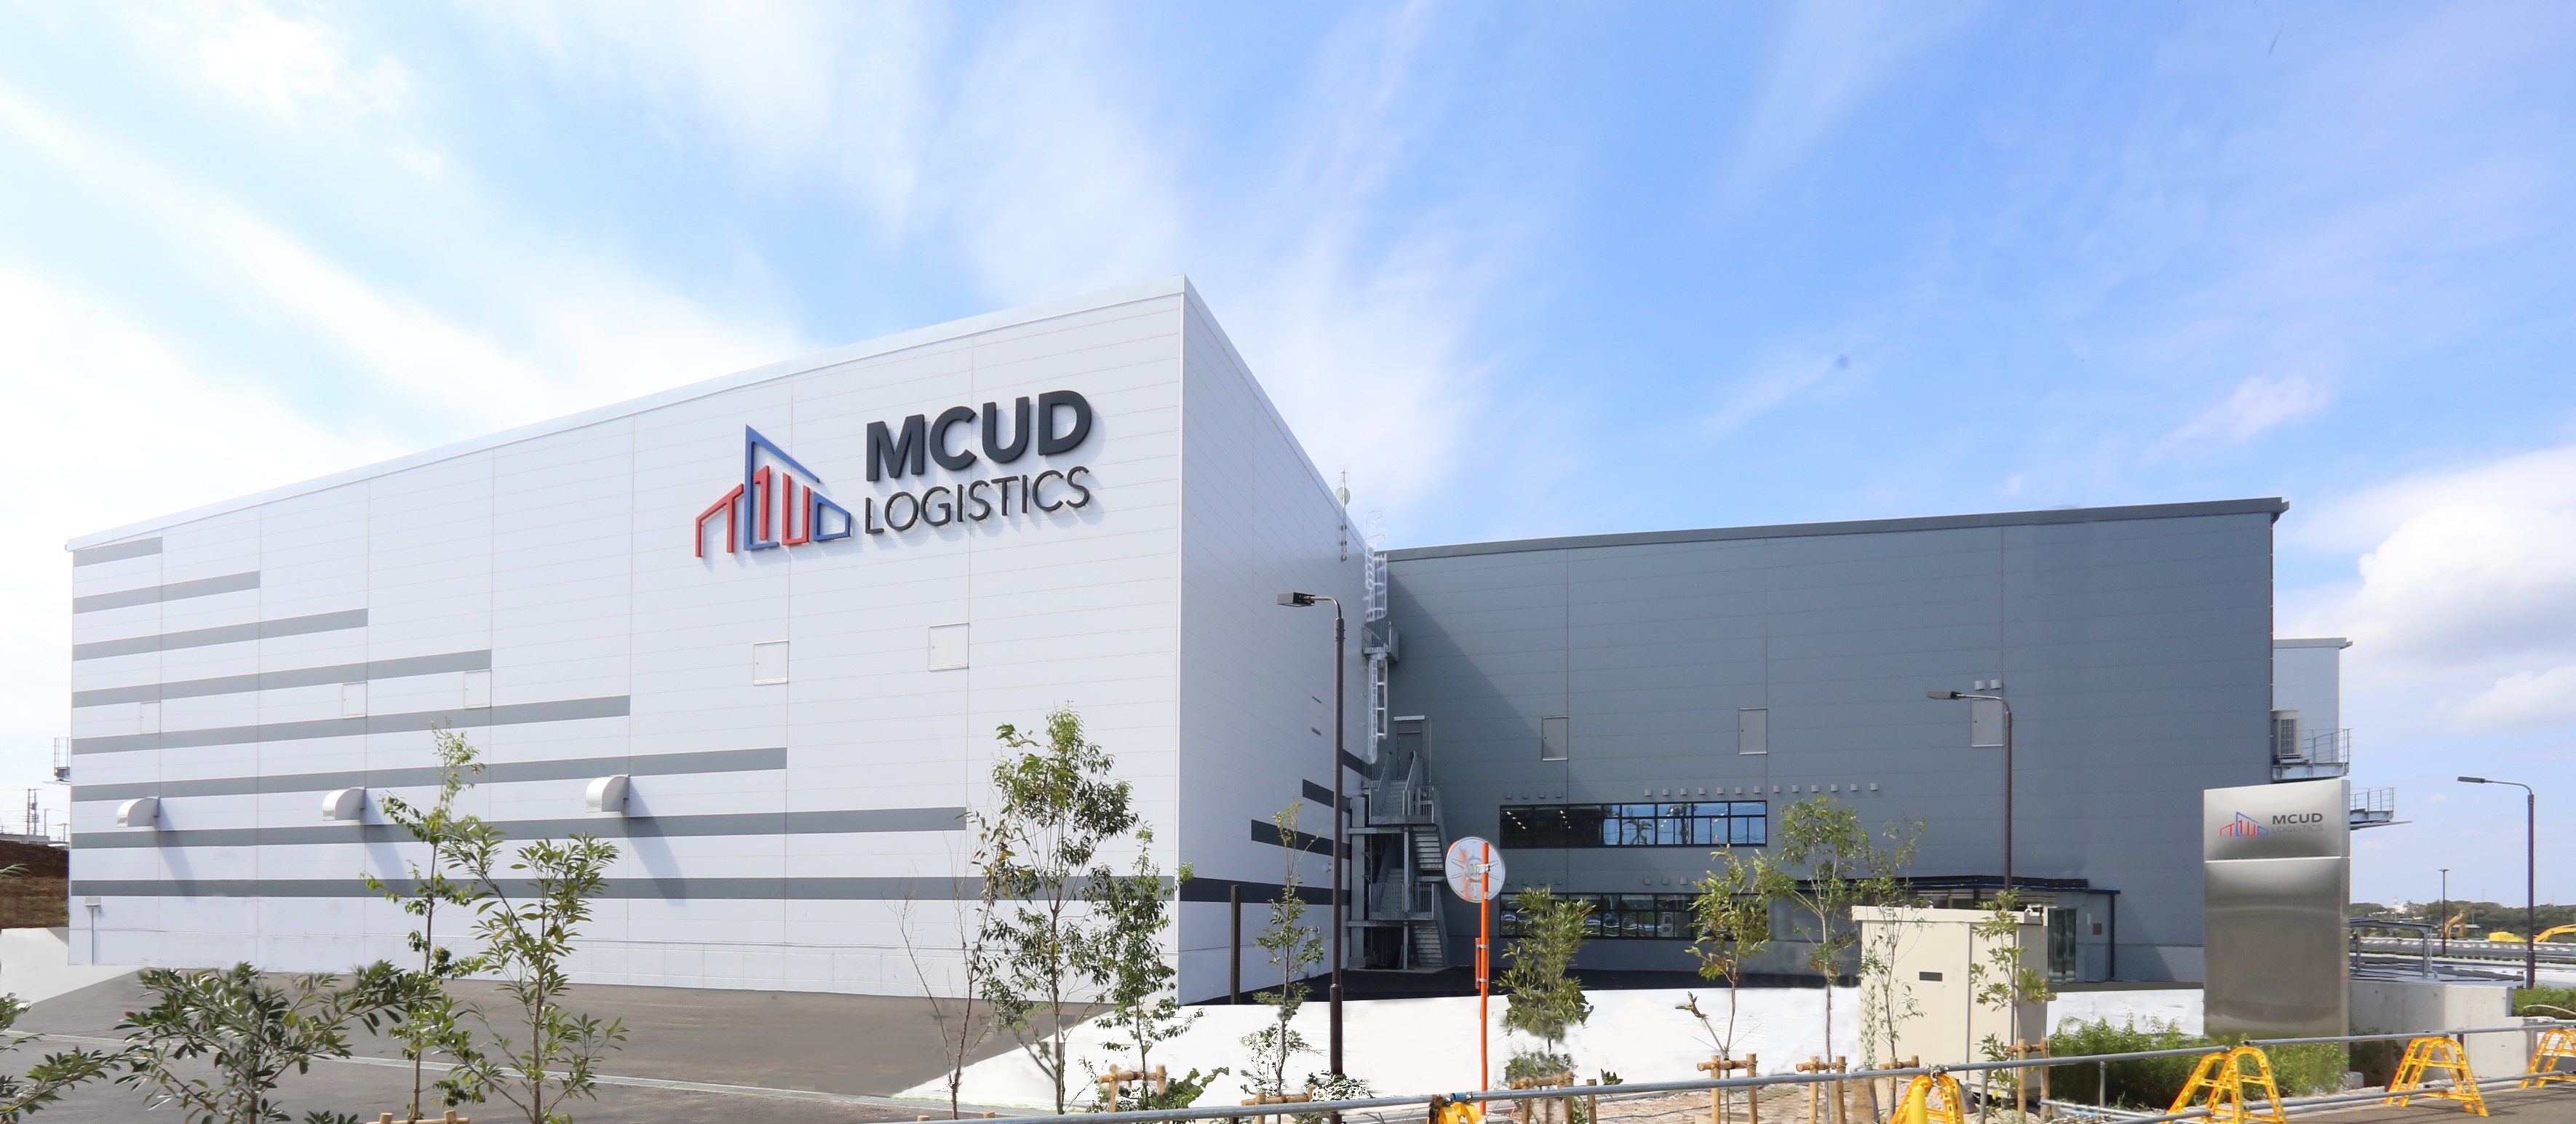 物流施設 Mcud八千代 竣工のお知らせ 約11 000坪の都市型高機能倉庫開発 三菱商事都市開発株式会社のプレスリリース